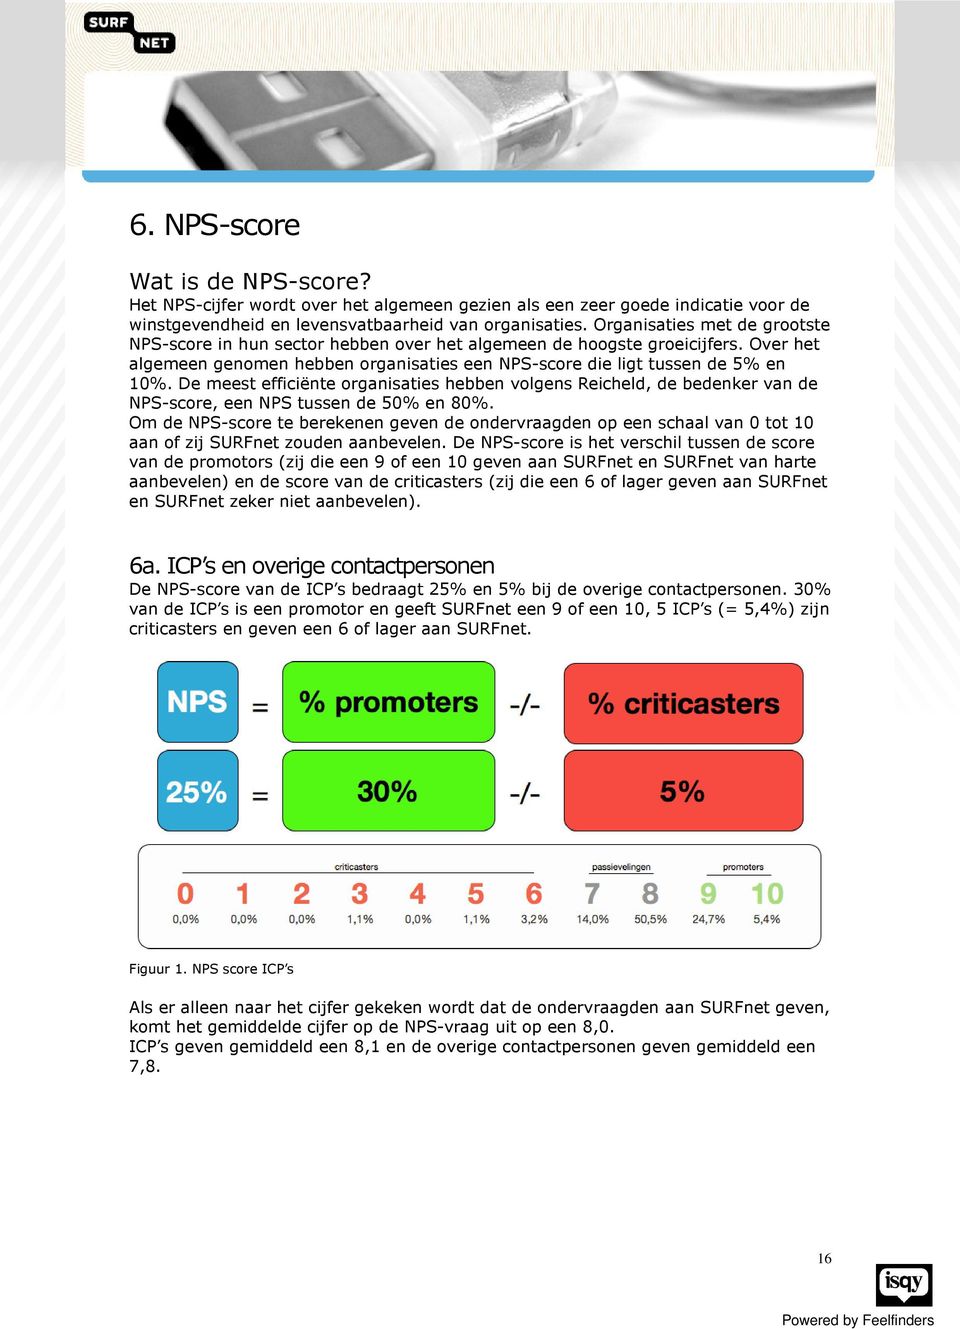 De meest efficiënte organisaties hebben volgens Reicheld, de bedenker van de NPS-score, een NPS tussen de 50% en 80%.